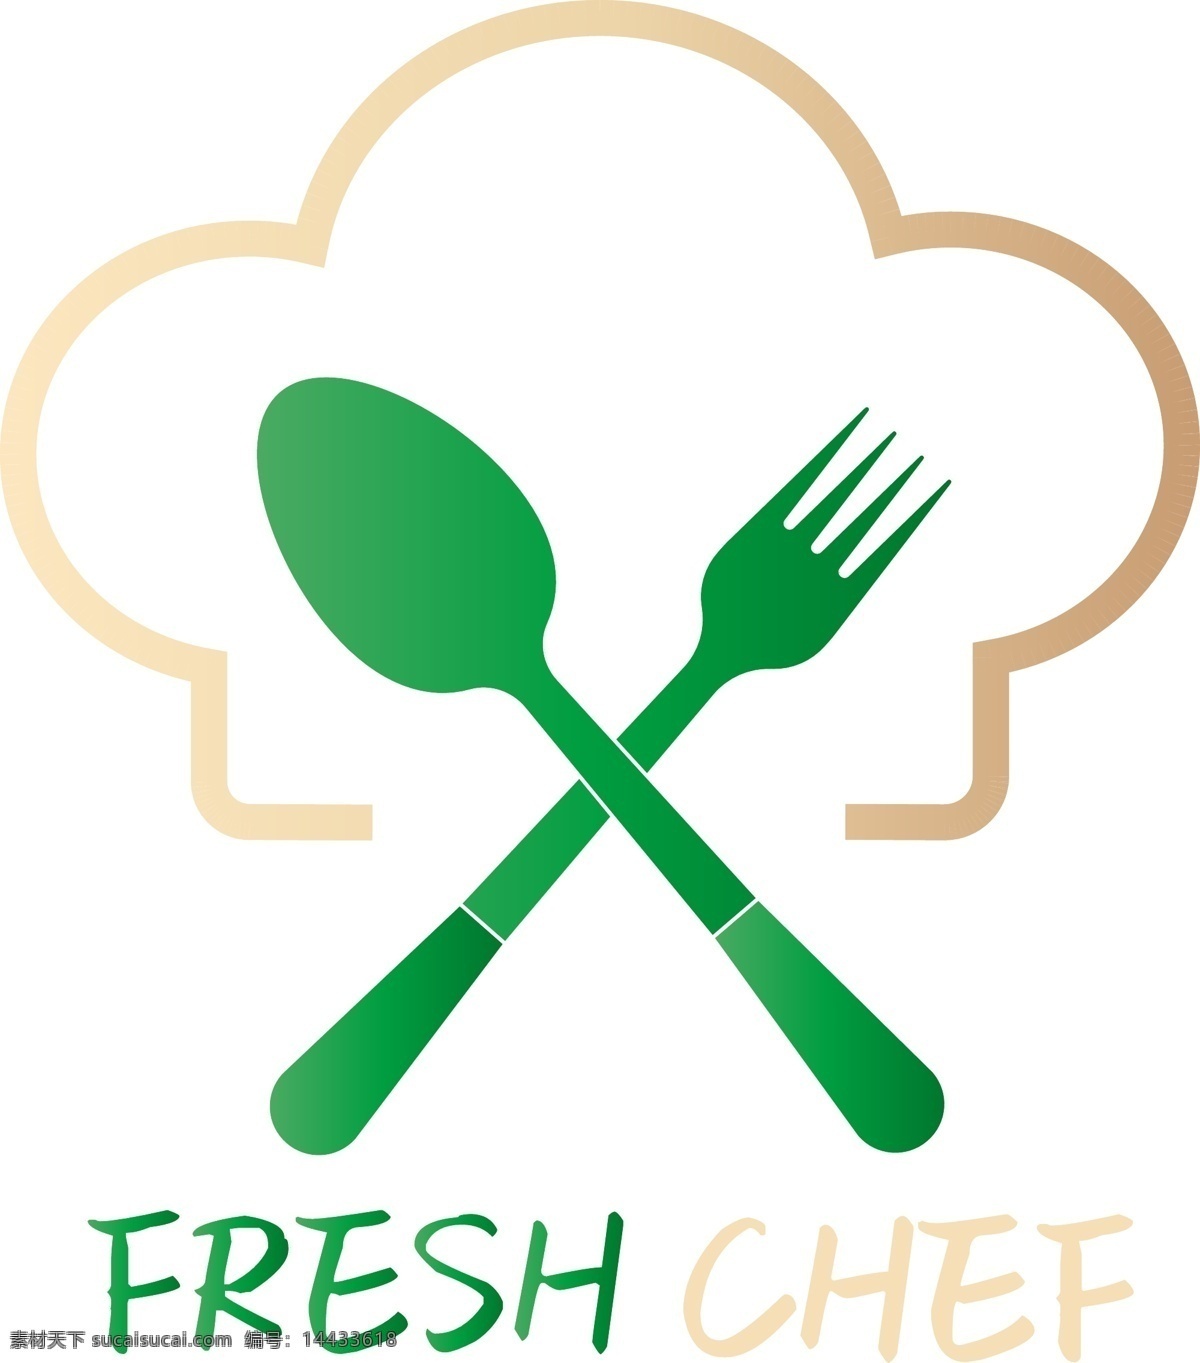 卡通 手绘 厨师 帽 标签 新鲜 厨师帽标签 食物 食物标签 西餐 西餐厅 刀叉 餐厅标签